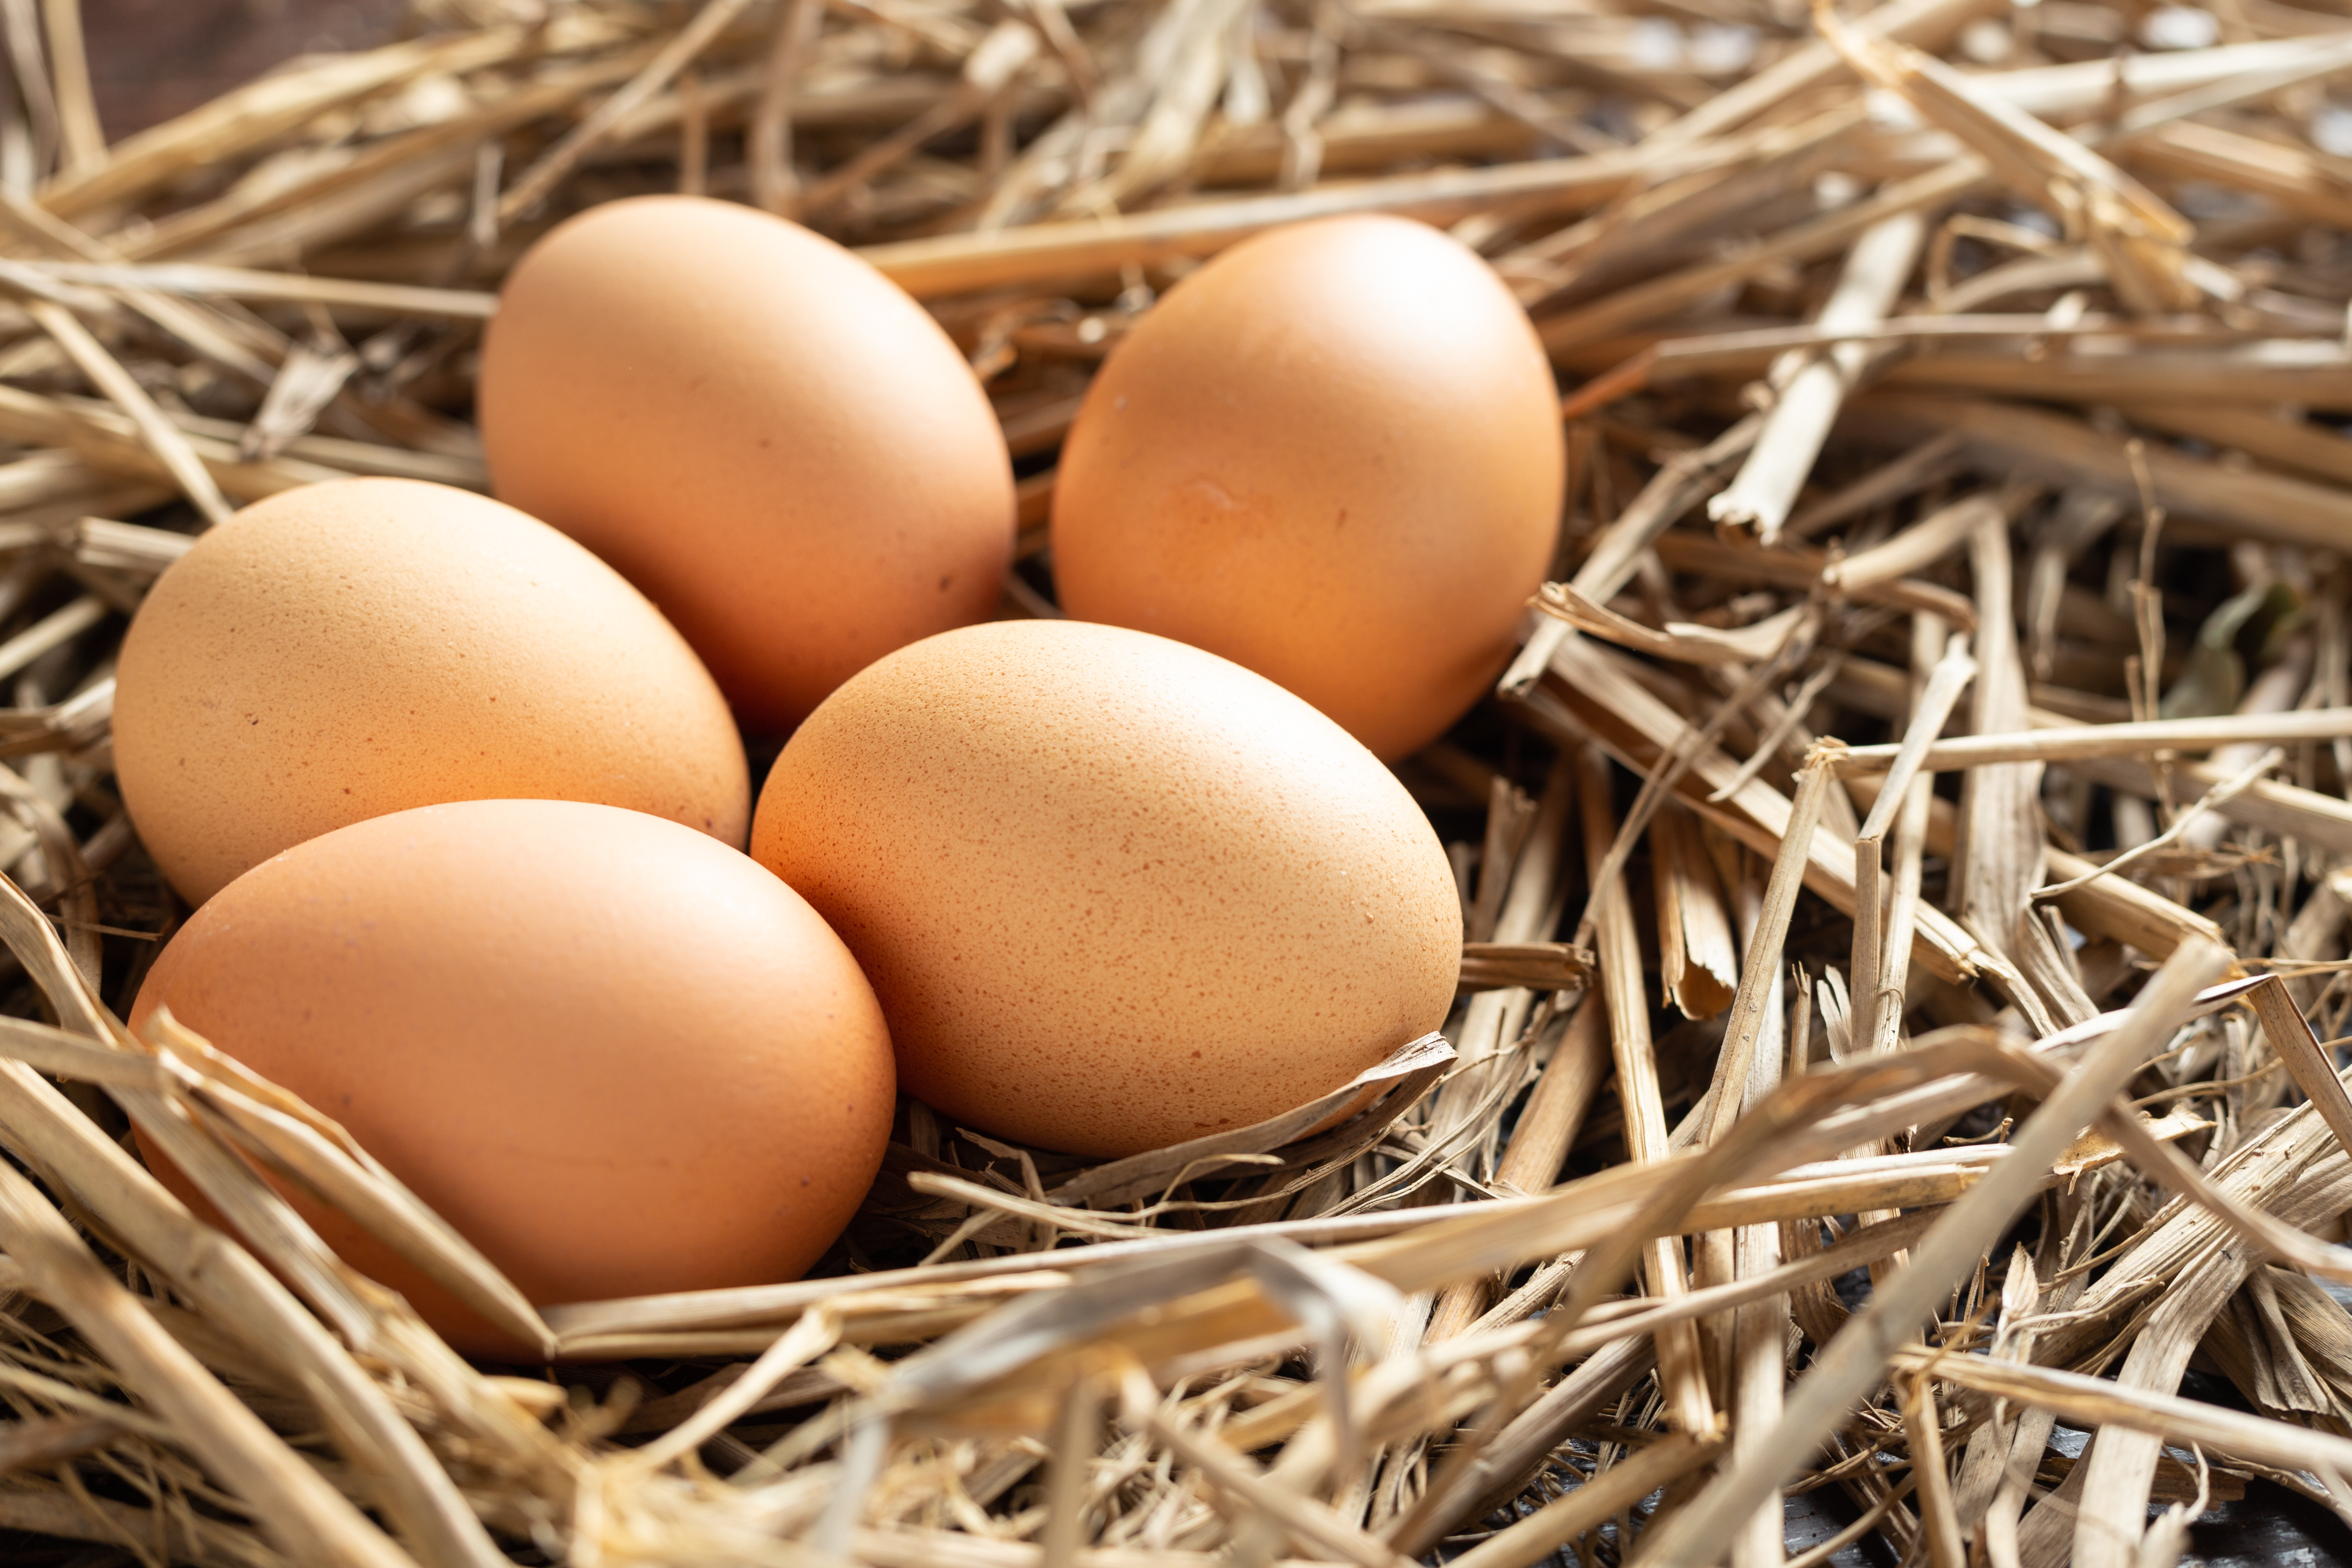 Conseils pour l'élevage de volailles afin d'éviter que les poules ne cassent les œufs